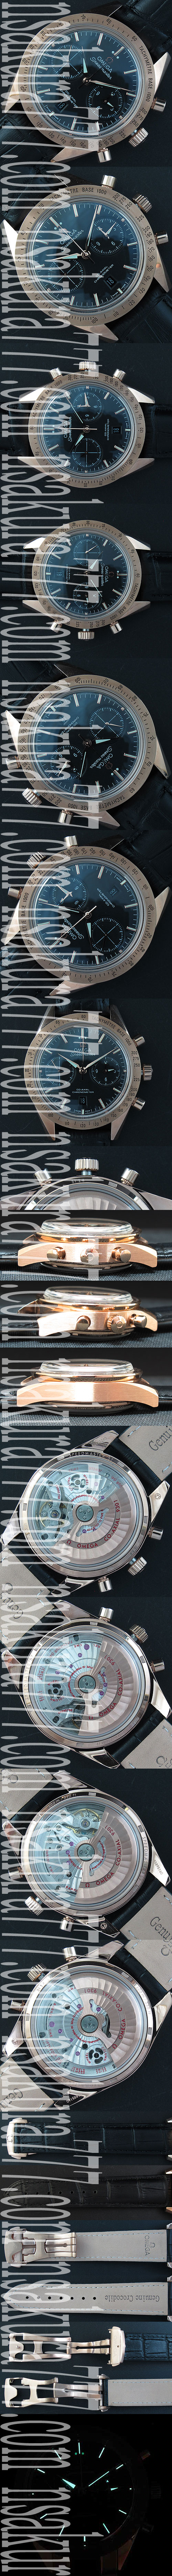 レプリカ時計オメガ スピードマスター57 クロノグラフ, Asian 7750搭載! - ウインドウを閉じる